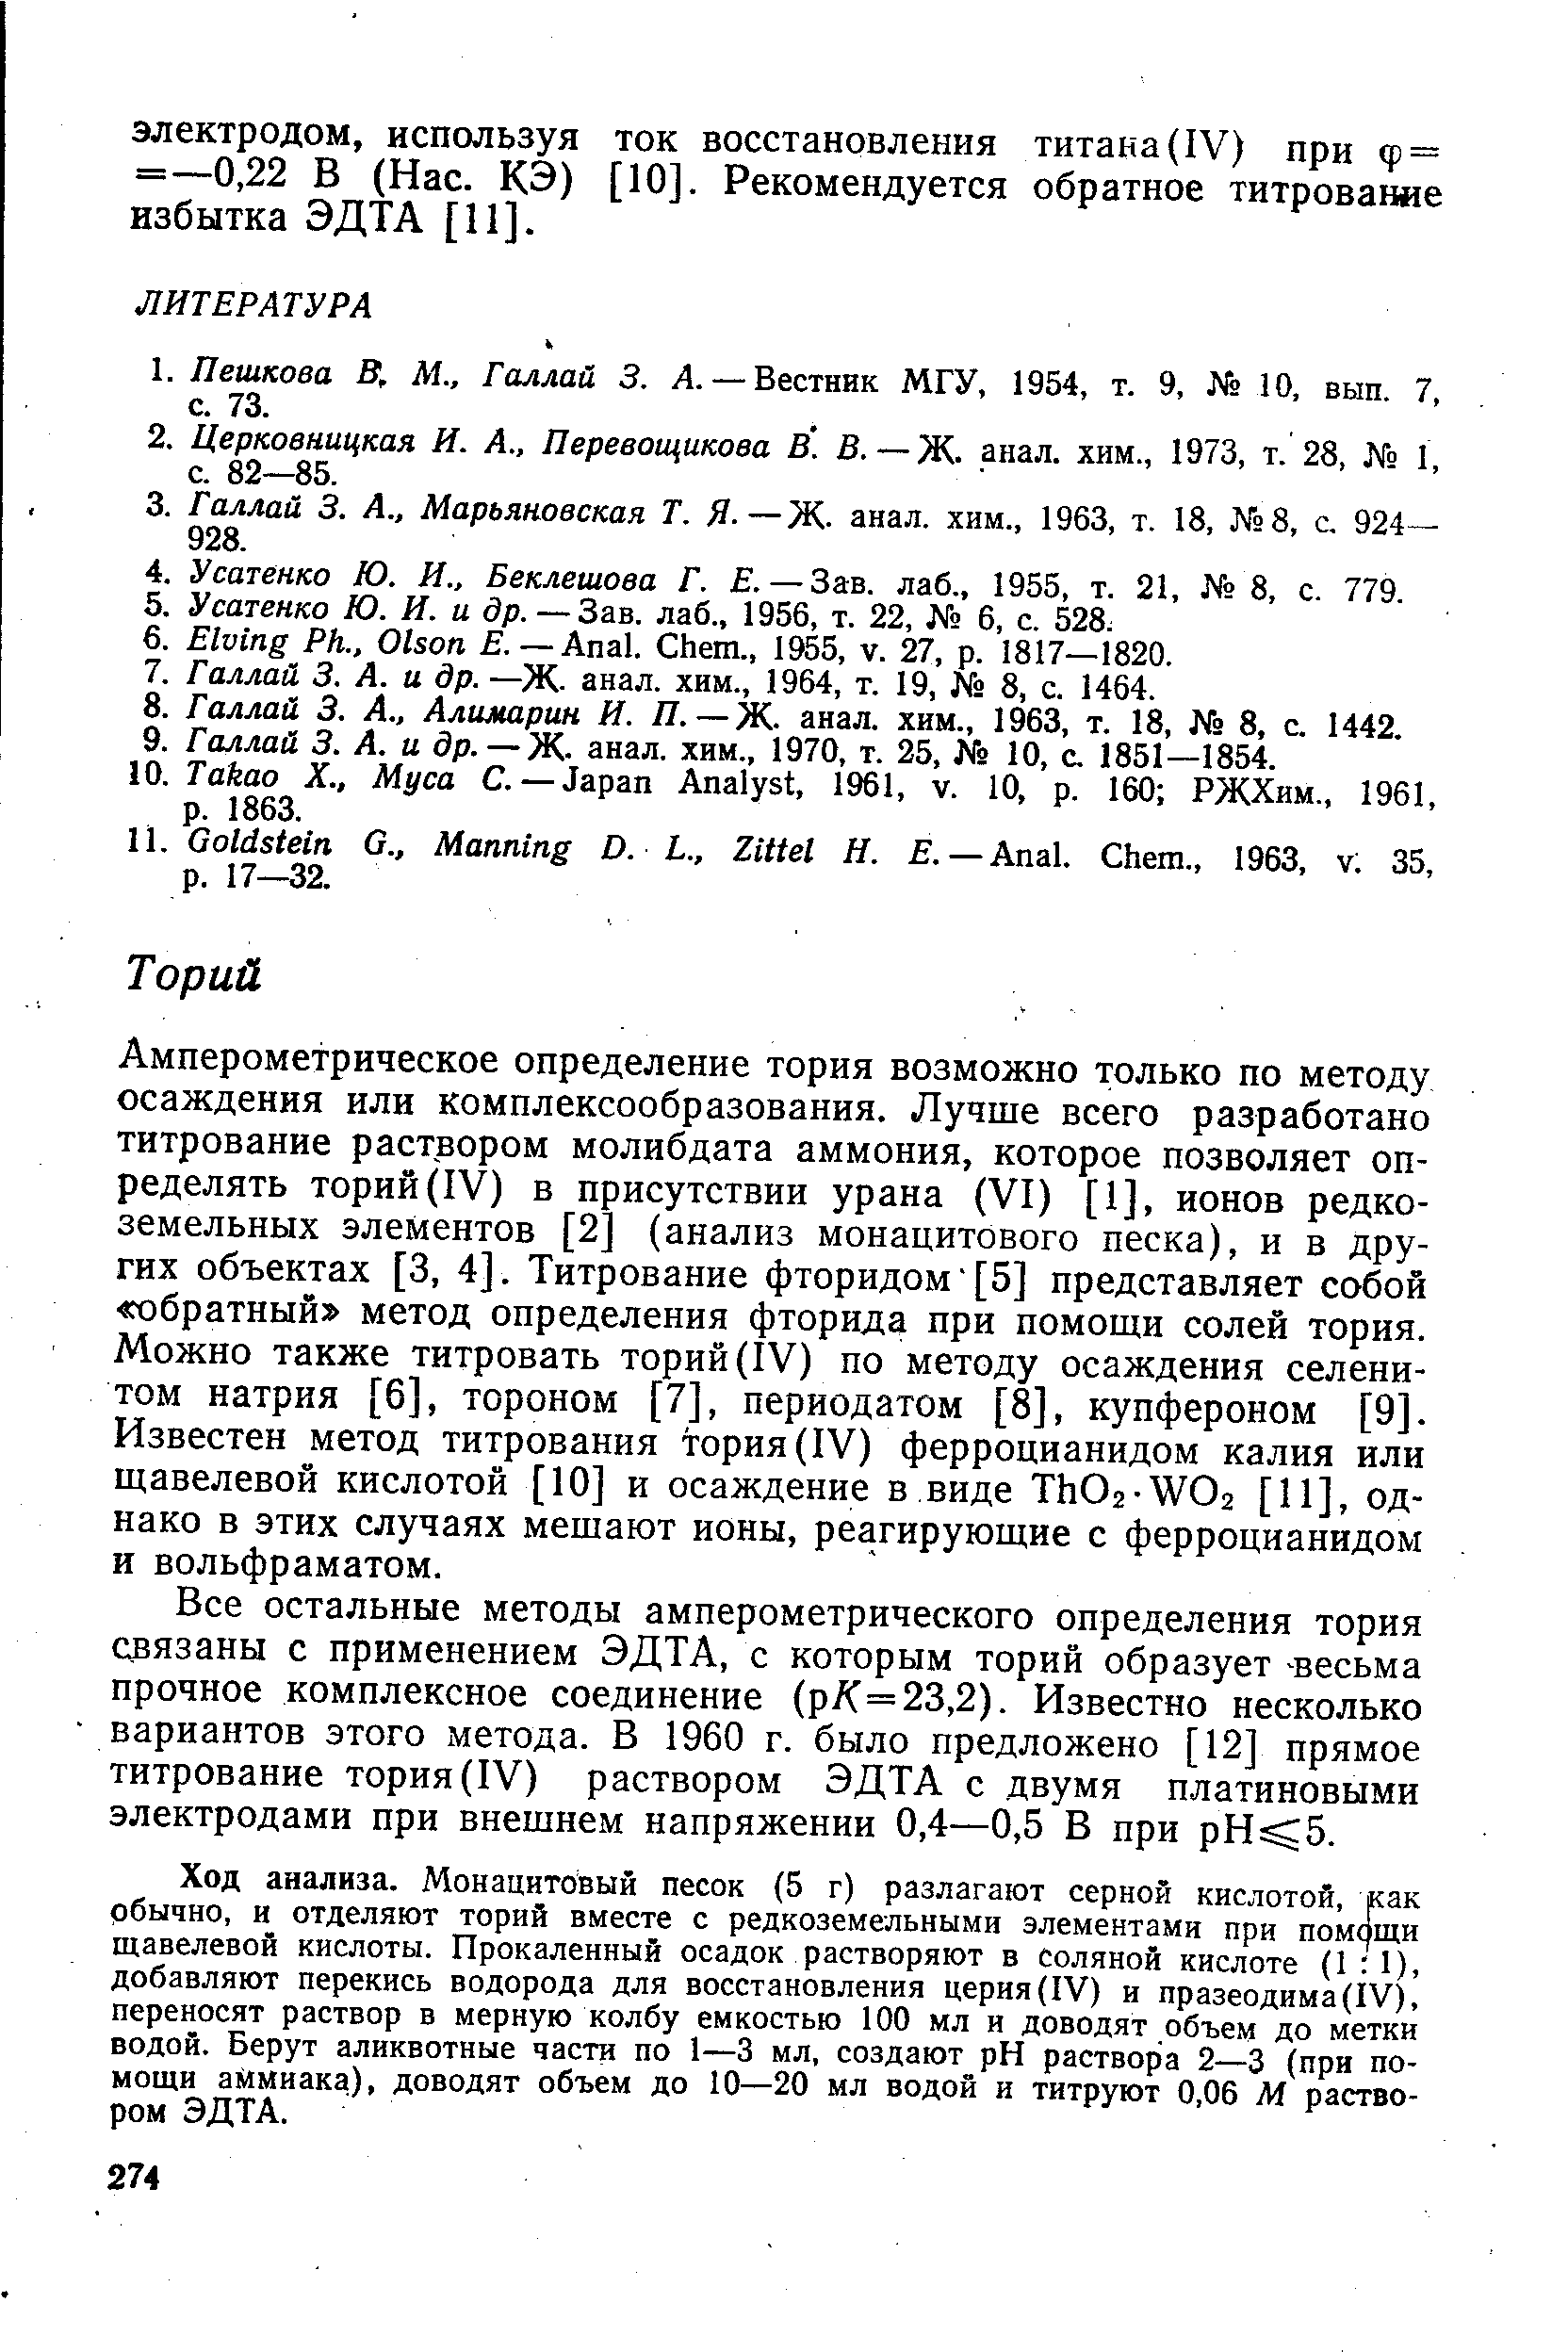 Амперометрическое определение тория возможно только по методу осаждения или комплексообразования. Лучше всего разработано титрование раствором молибдата аммония, которое позволяет определять торий (IV) в присутствии урана (VI) [1], ионов редкоземельных элементов [2] (анализ монацитового песка), и в других объектах [3, 4]. Титрование фторидом [5] представляет собой обратный метод определения фторида при помощи солей тория. Можно также титровать торий (IV) по методу осаждения селенитом натрия [6], тороном [7], перйодатом [8], купфероном [9]. Известен метод титрования тория (IV) ферроцианидом калия или щавелевой кислотой [10] и осаждение в виде Th02-W02 [И], однако в этих случаях мешают ионы, реагирующие с ферроцианидом и вольфраматом.